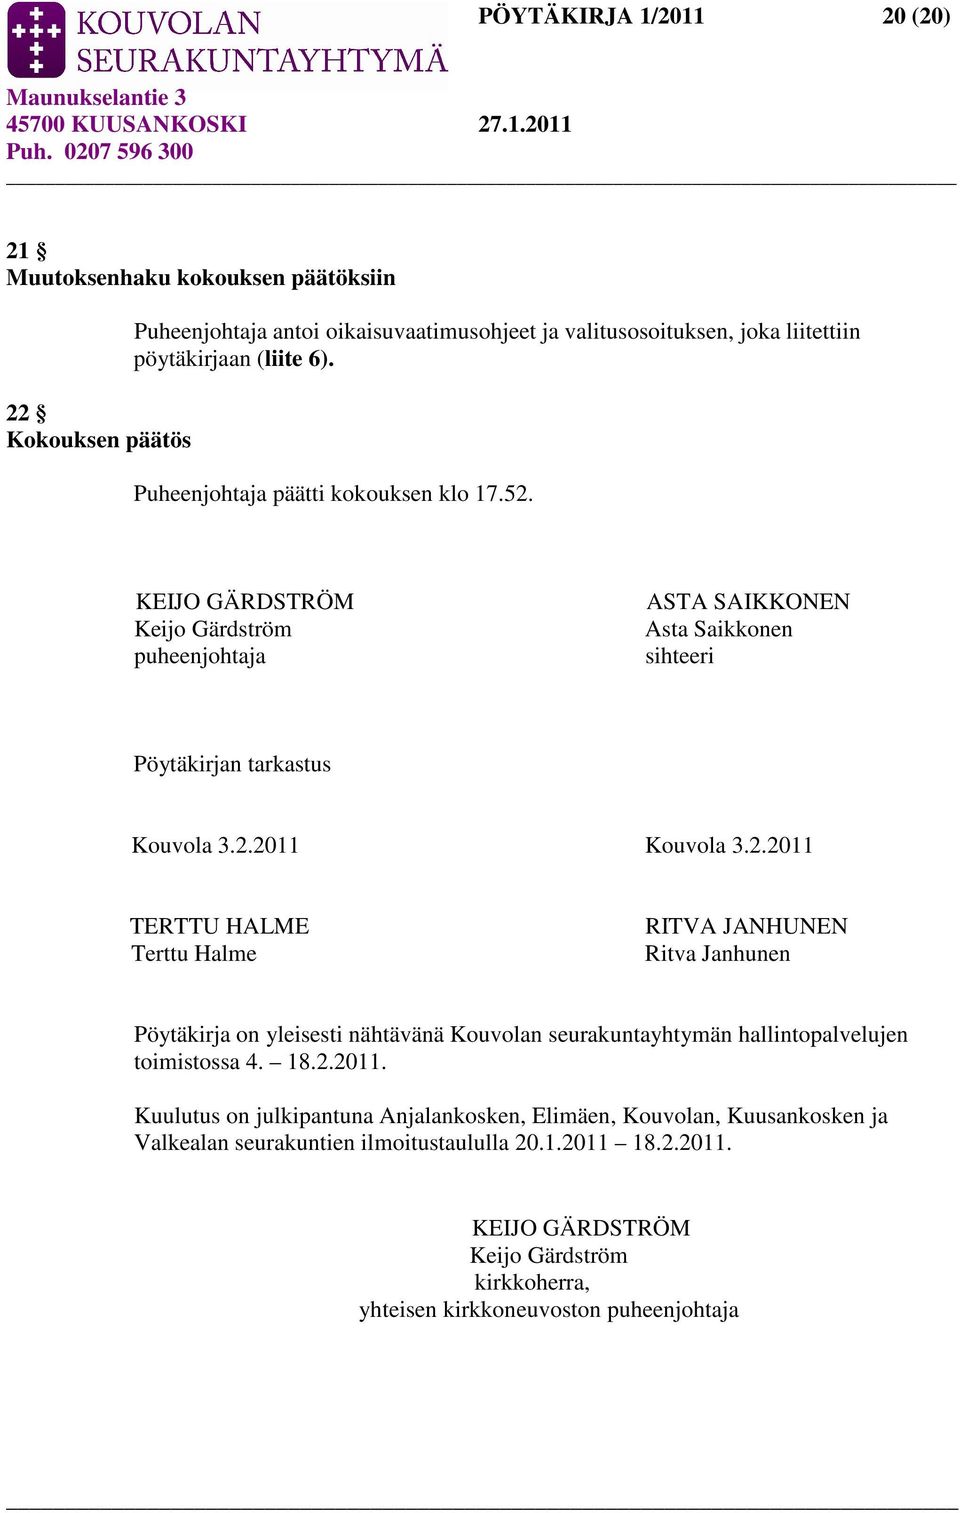 KEIJO GÄRDSTRÖM Keijo Gärdström puheenjohtaja ASTA SAIKKONEN Asta Saikkonen sihteeri Pöytäkirjan tarkastus Kouvola 3.2.